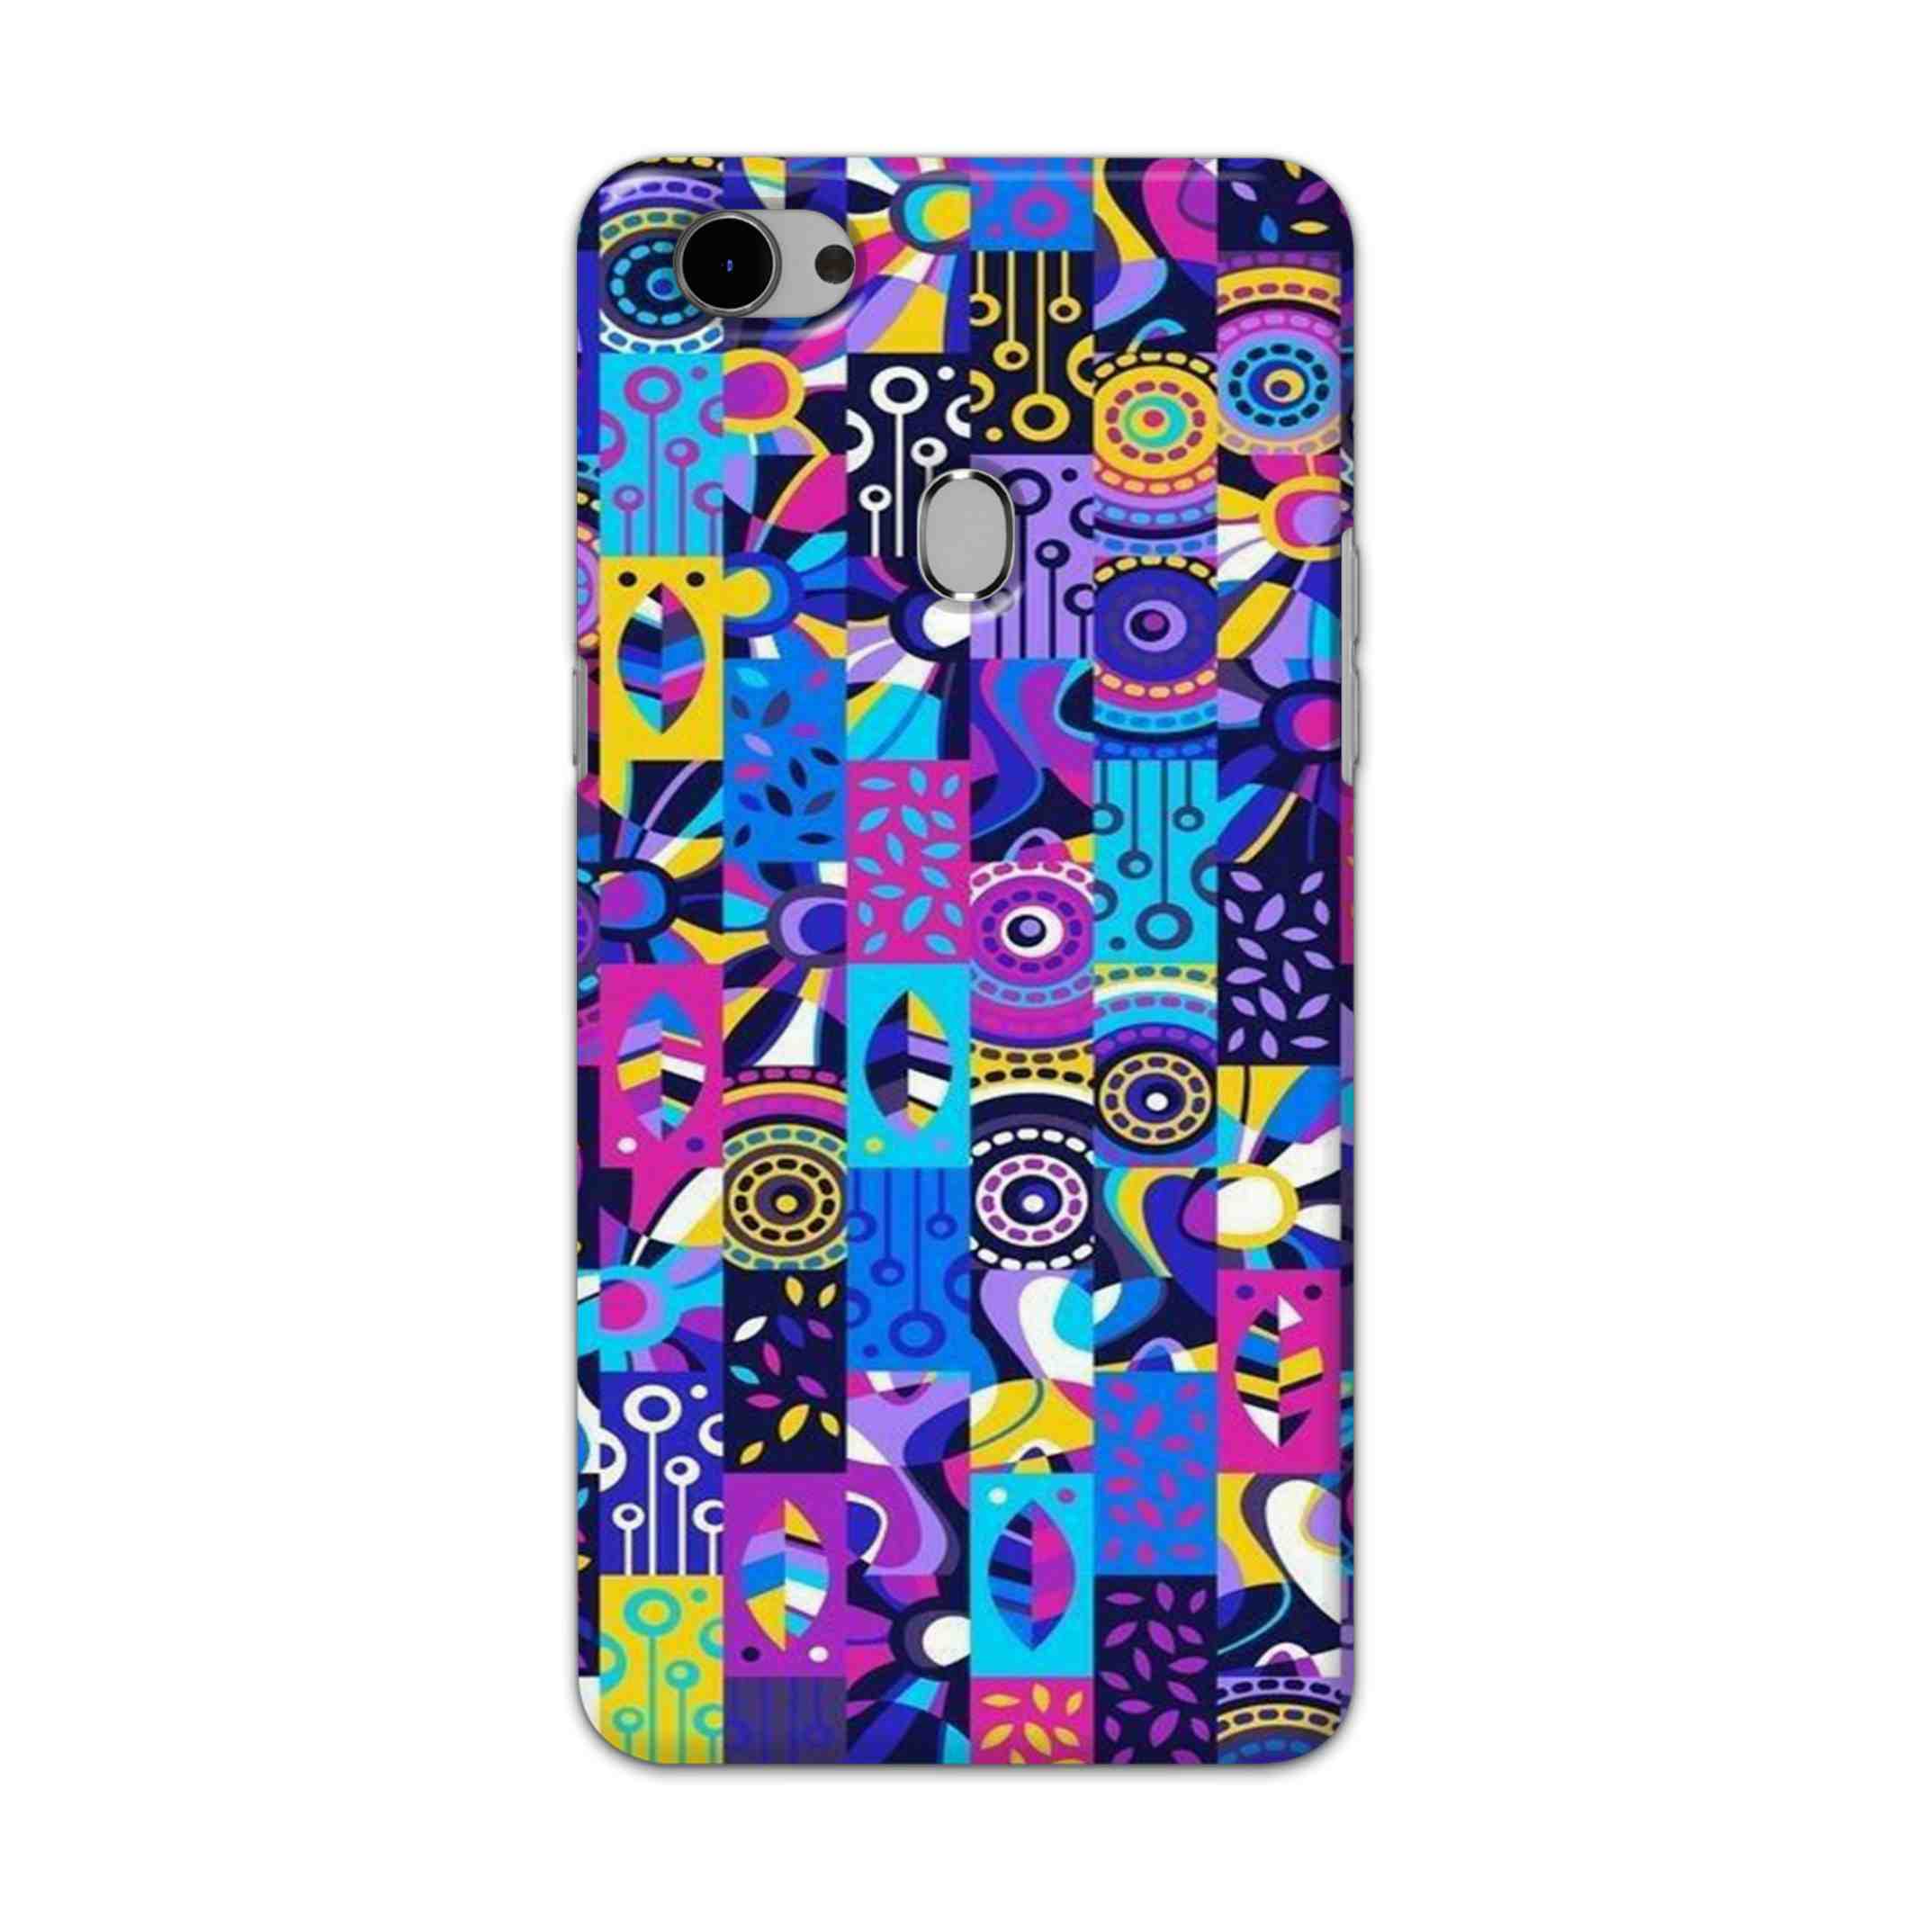 Buy Rainbow Art Hard Back Mobile Phone Case Cover For Oppo F7 Online